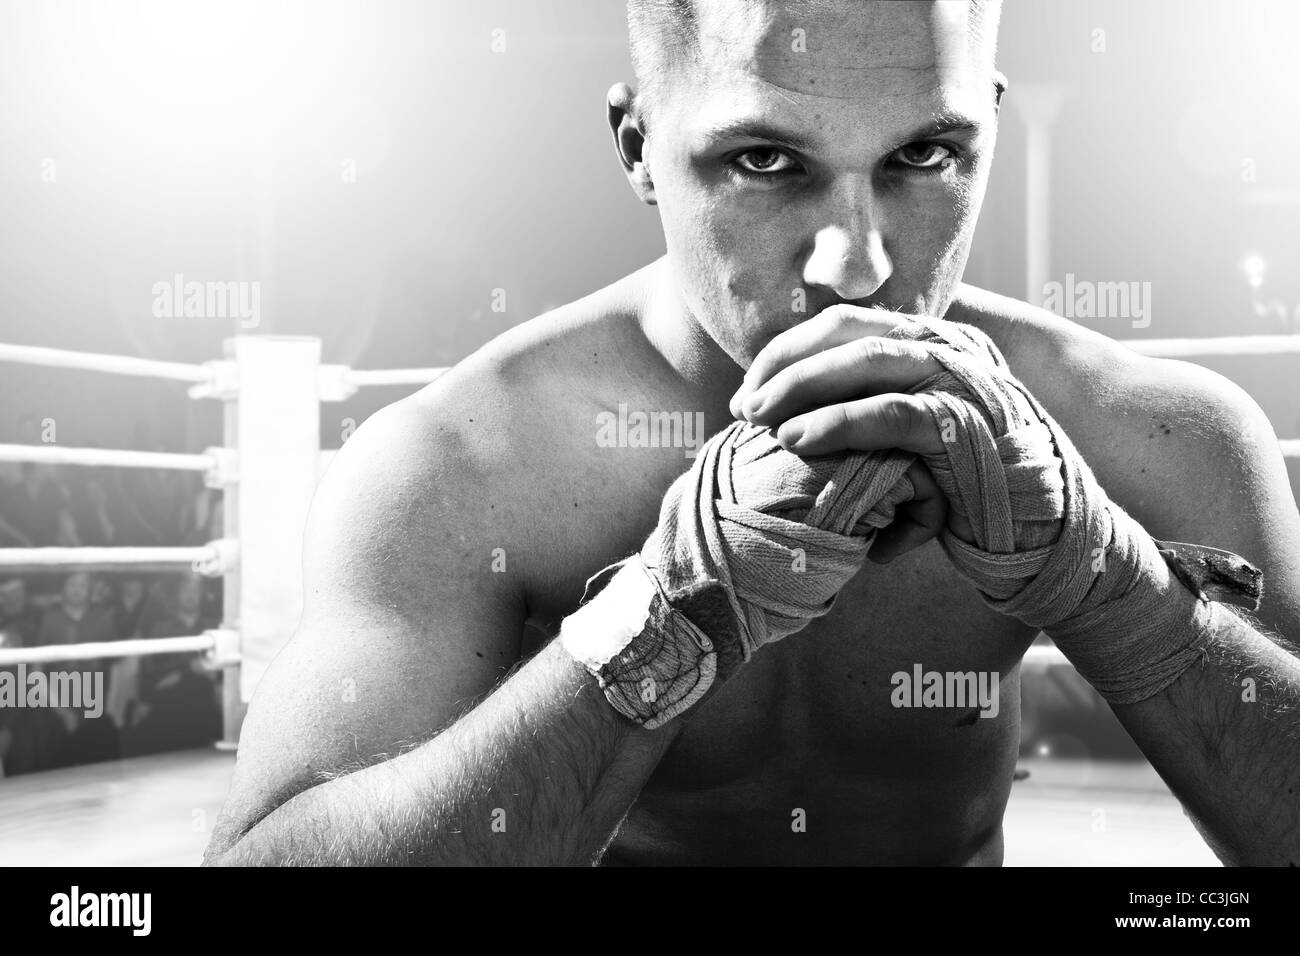 Kickboxer assis sur le ring de combat Banque D'Images